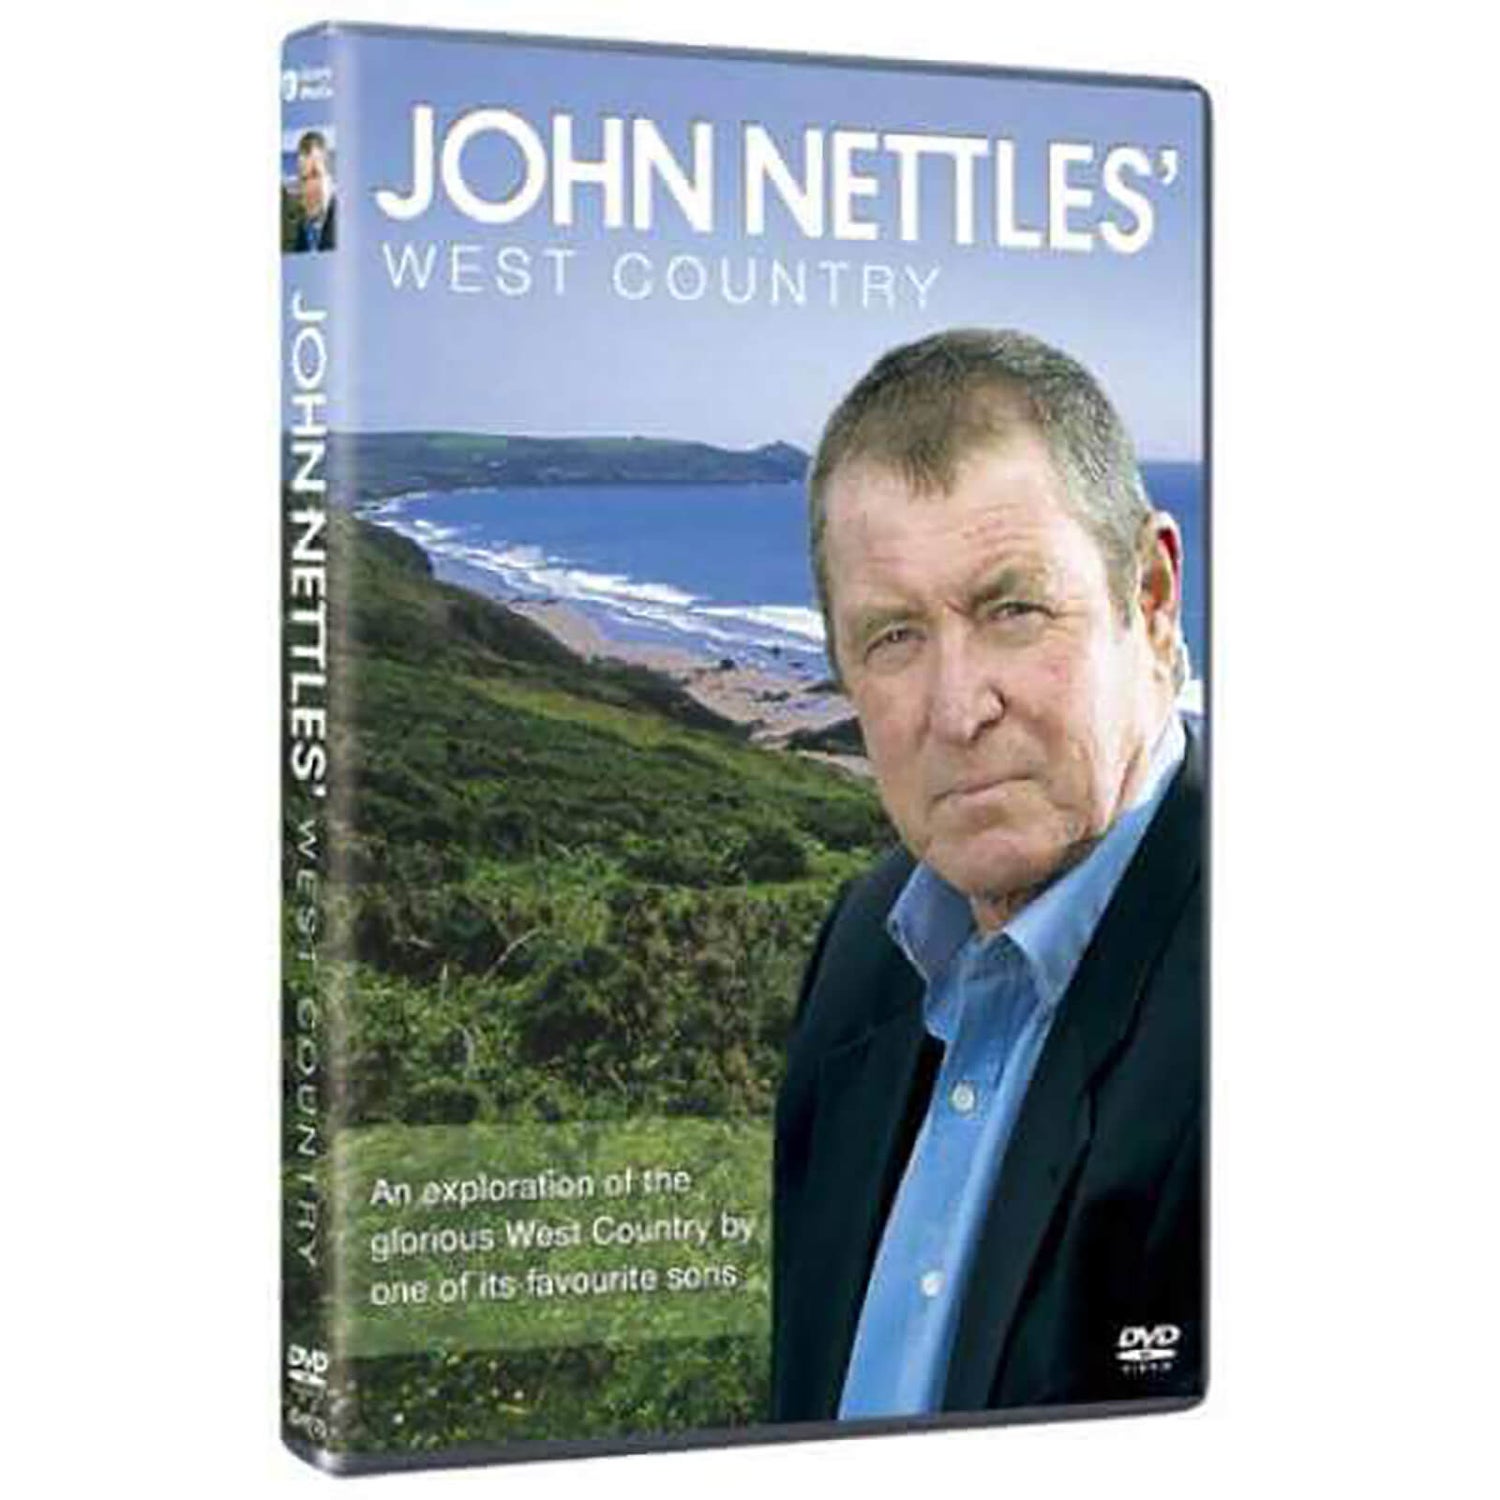 John Nettles' West Country